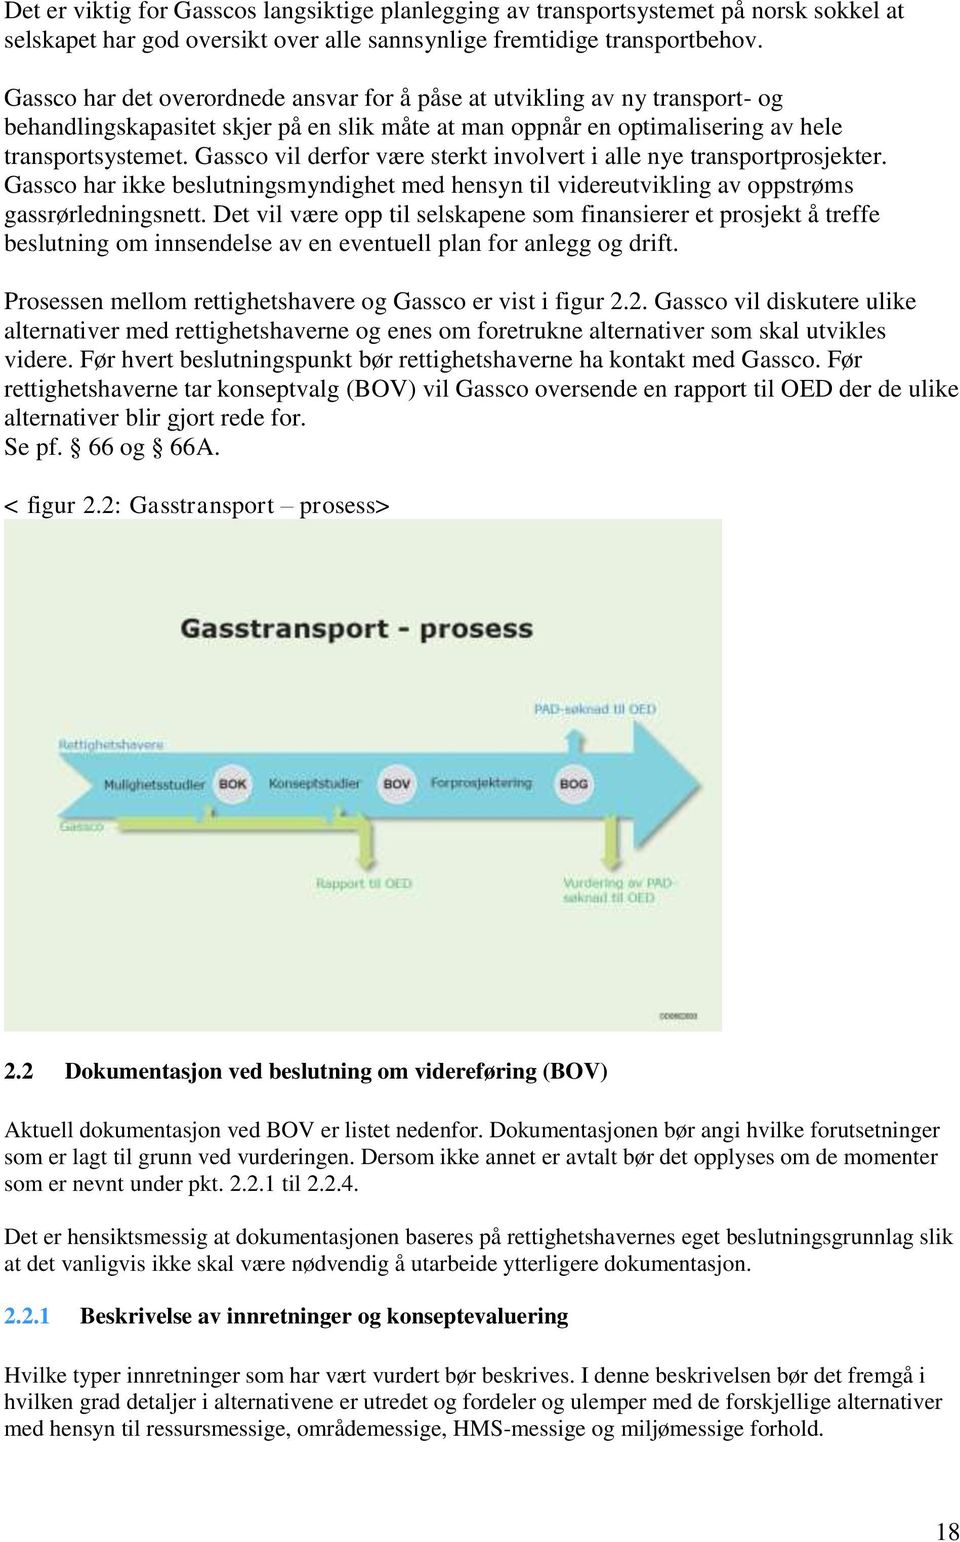 Gassco vil derfor være sterkt involvert i alle nye transportprosjekter. Gassco har ikke beslutningsmyndighet med hensyn til videreutvikling av oppstrøms gassrørledningsnett.